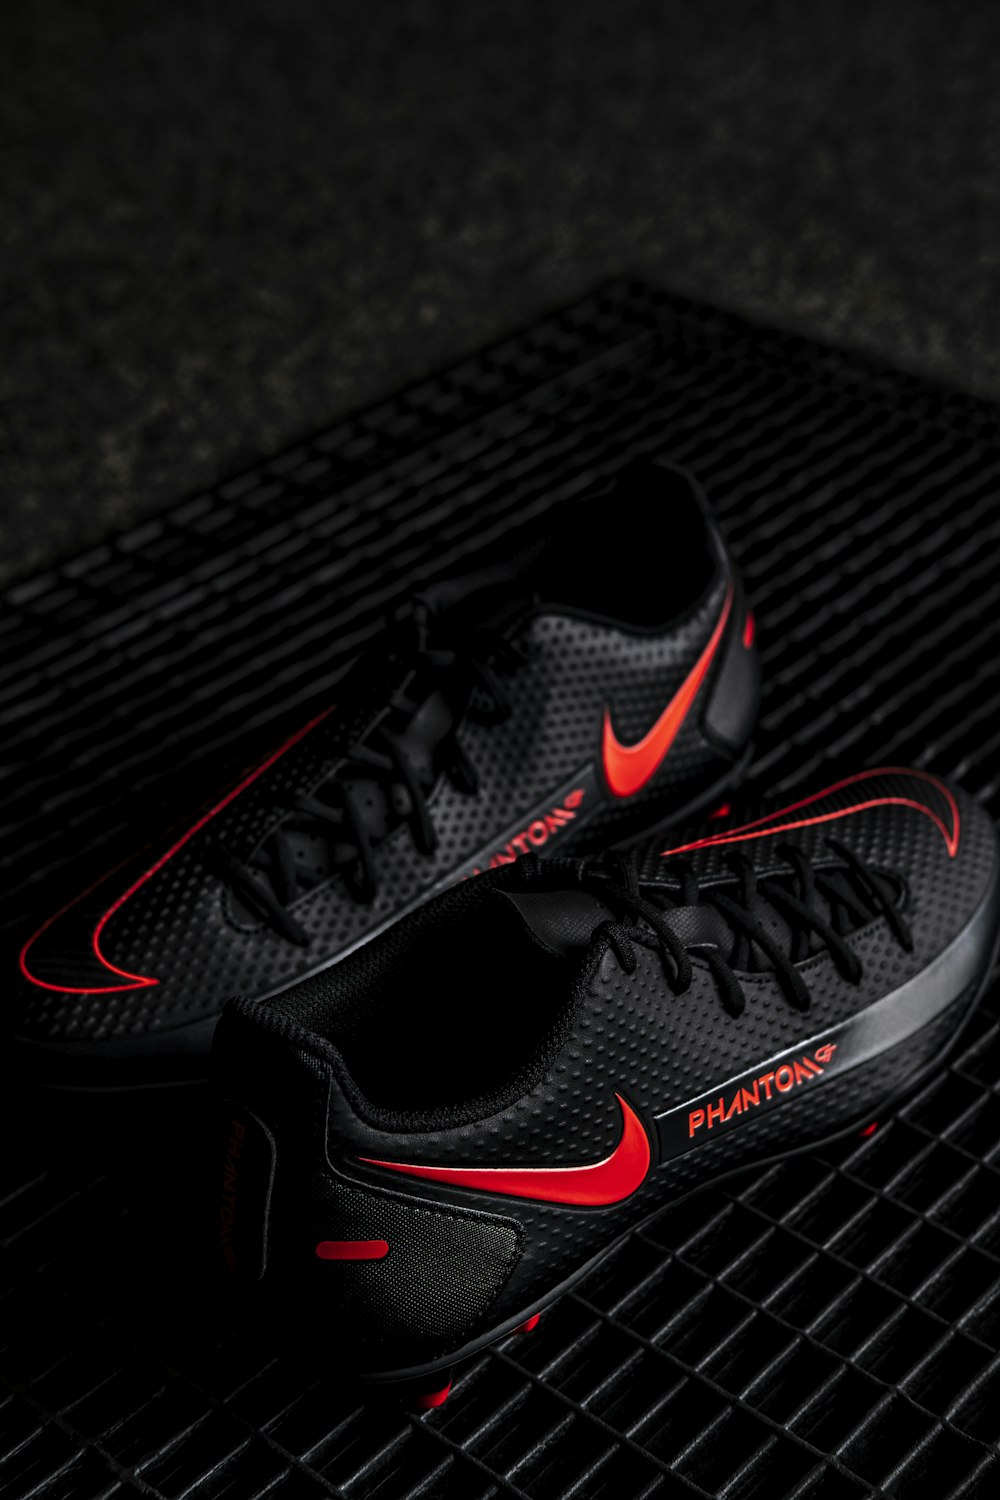 Foto Zapatillas deportivas Nike negras y rojas – Imagen Nike Fútbol gratis  en Unsplash